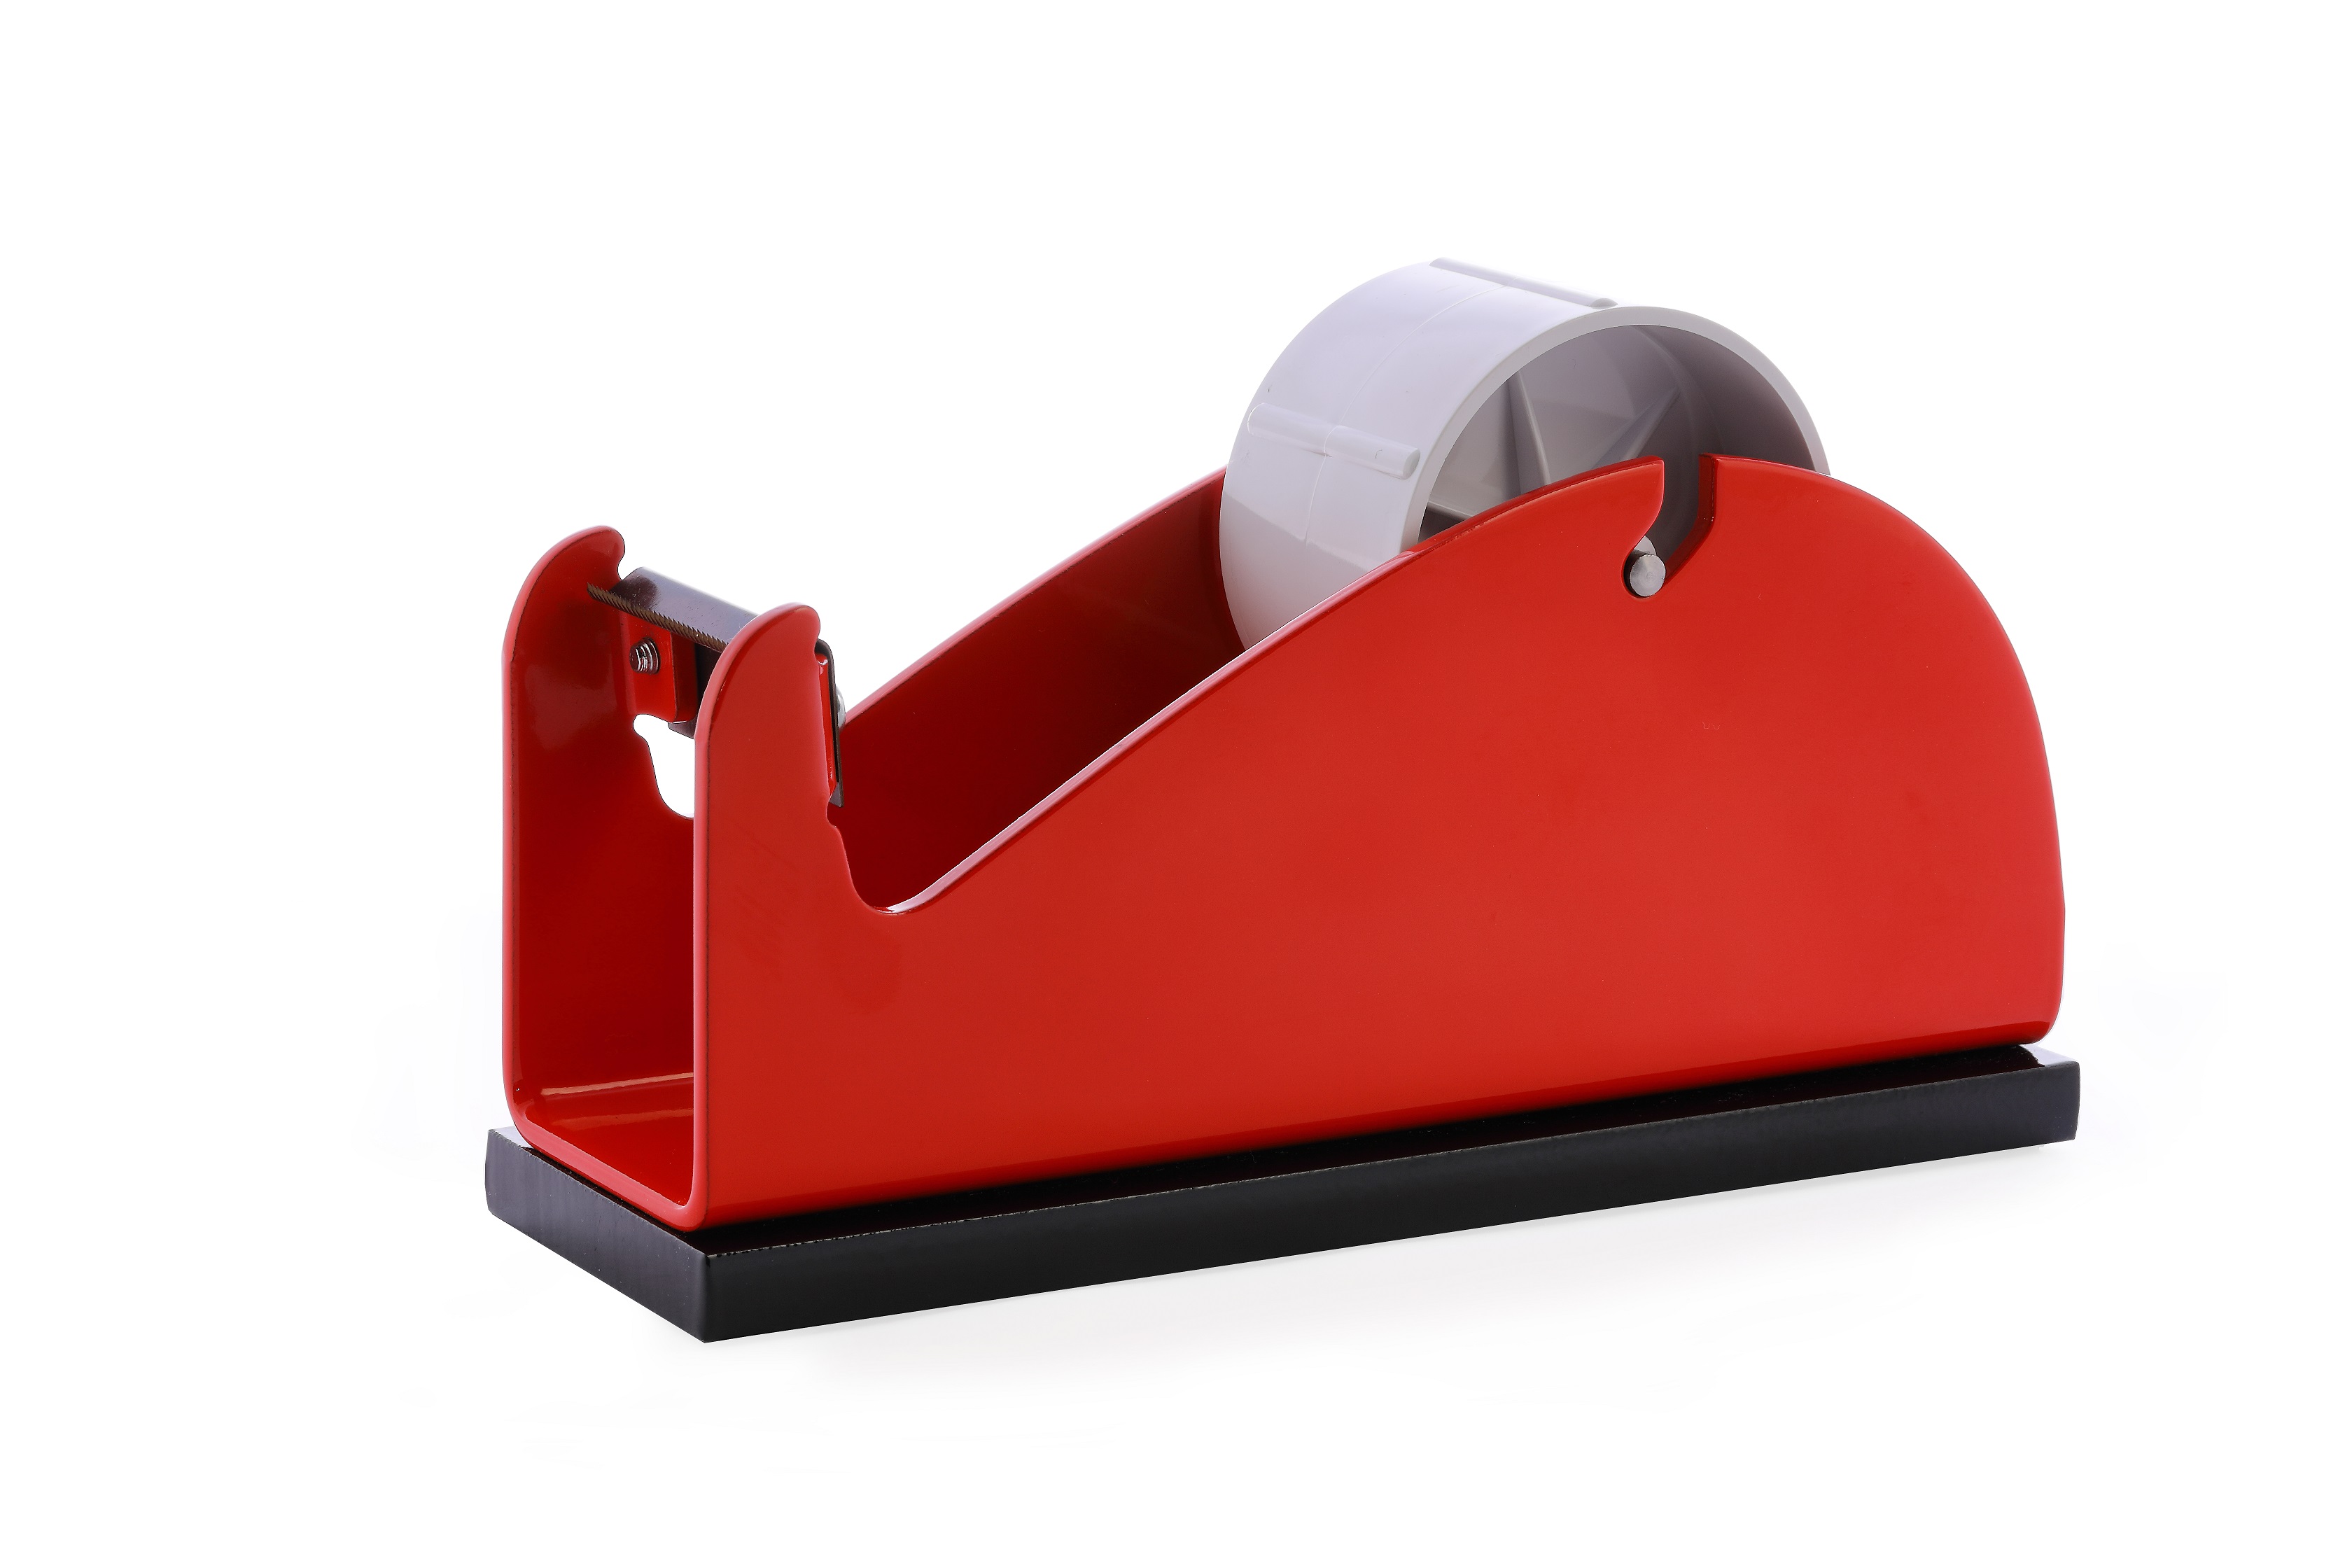 Klebeband-Tischabroller Rot, mit beschwerender Platte, 50mm Bandbreite, 145mm Außendurchmesser